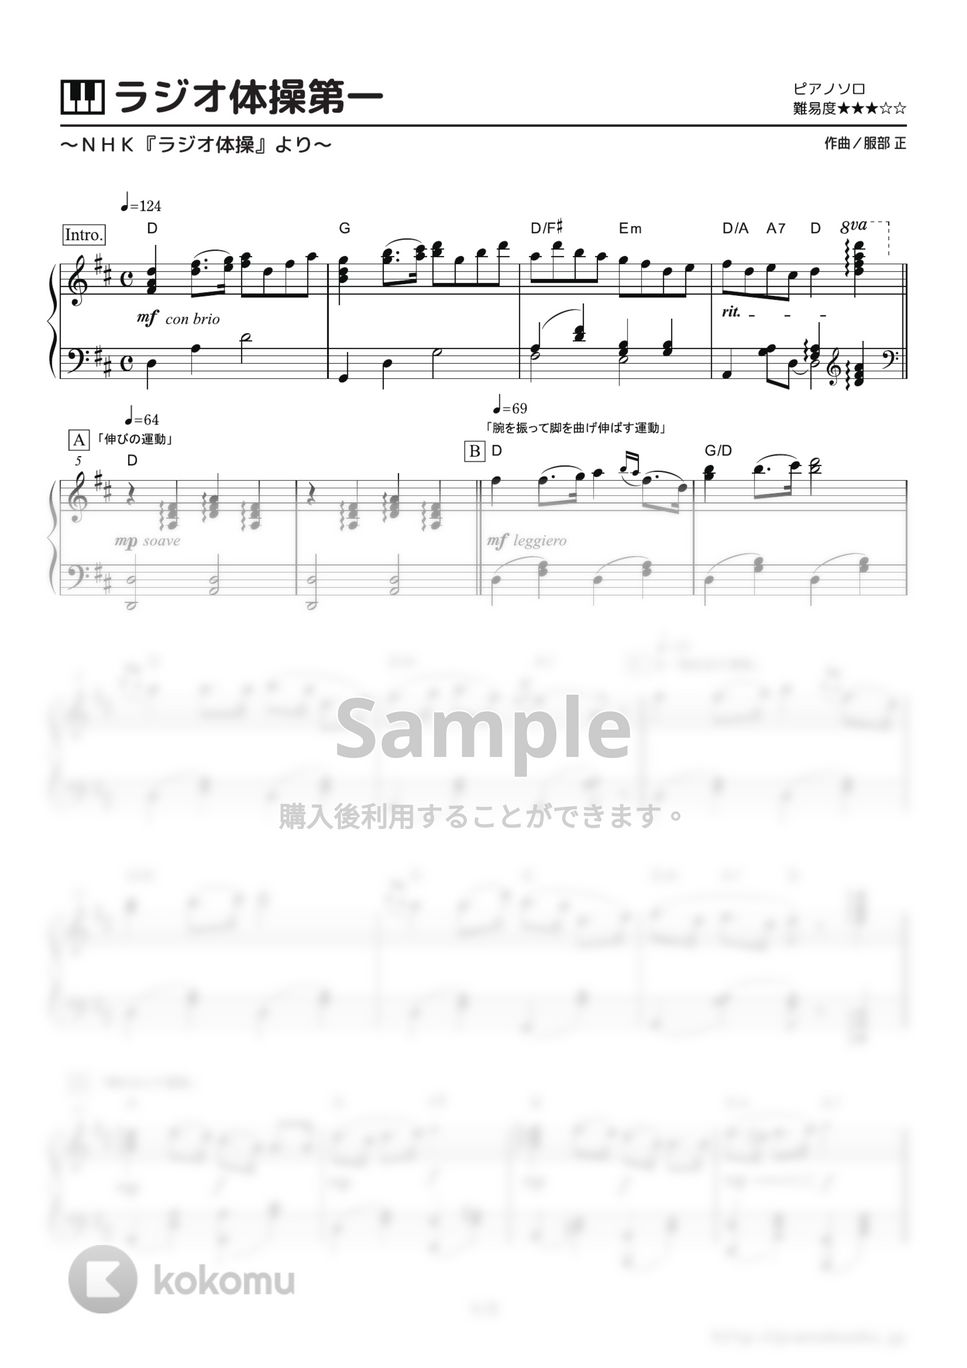 服部正 - ラジオ体操第一 (NHK『ラジオ体操』) by ピアノの本棚